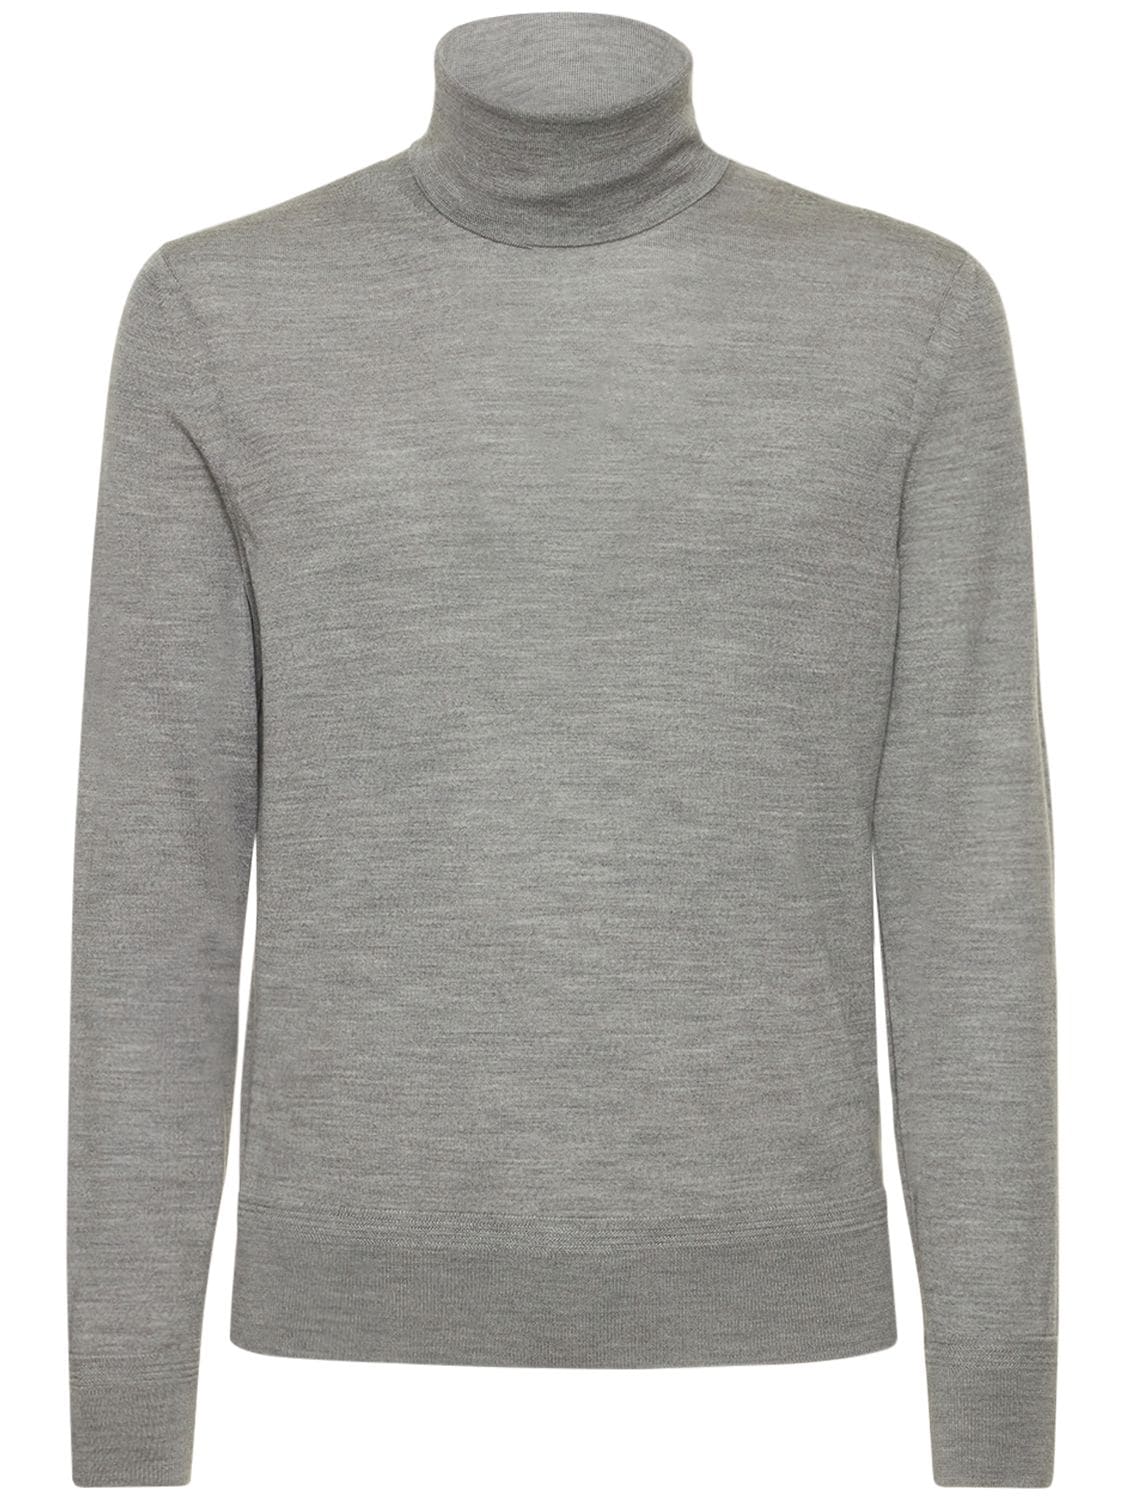 Tom Ford Fine Gauge Wool Roll Neck Sweater In Light Grey